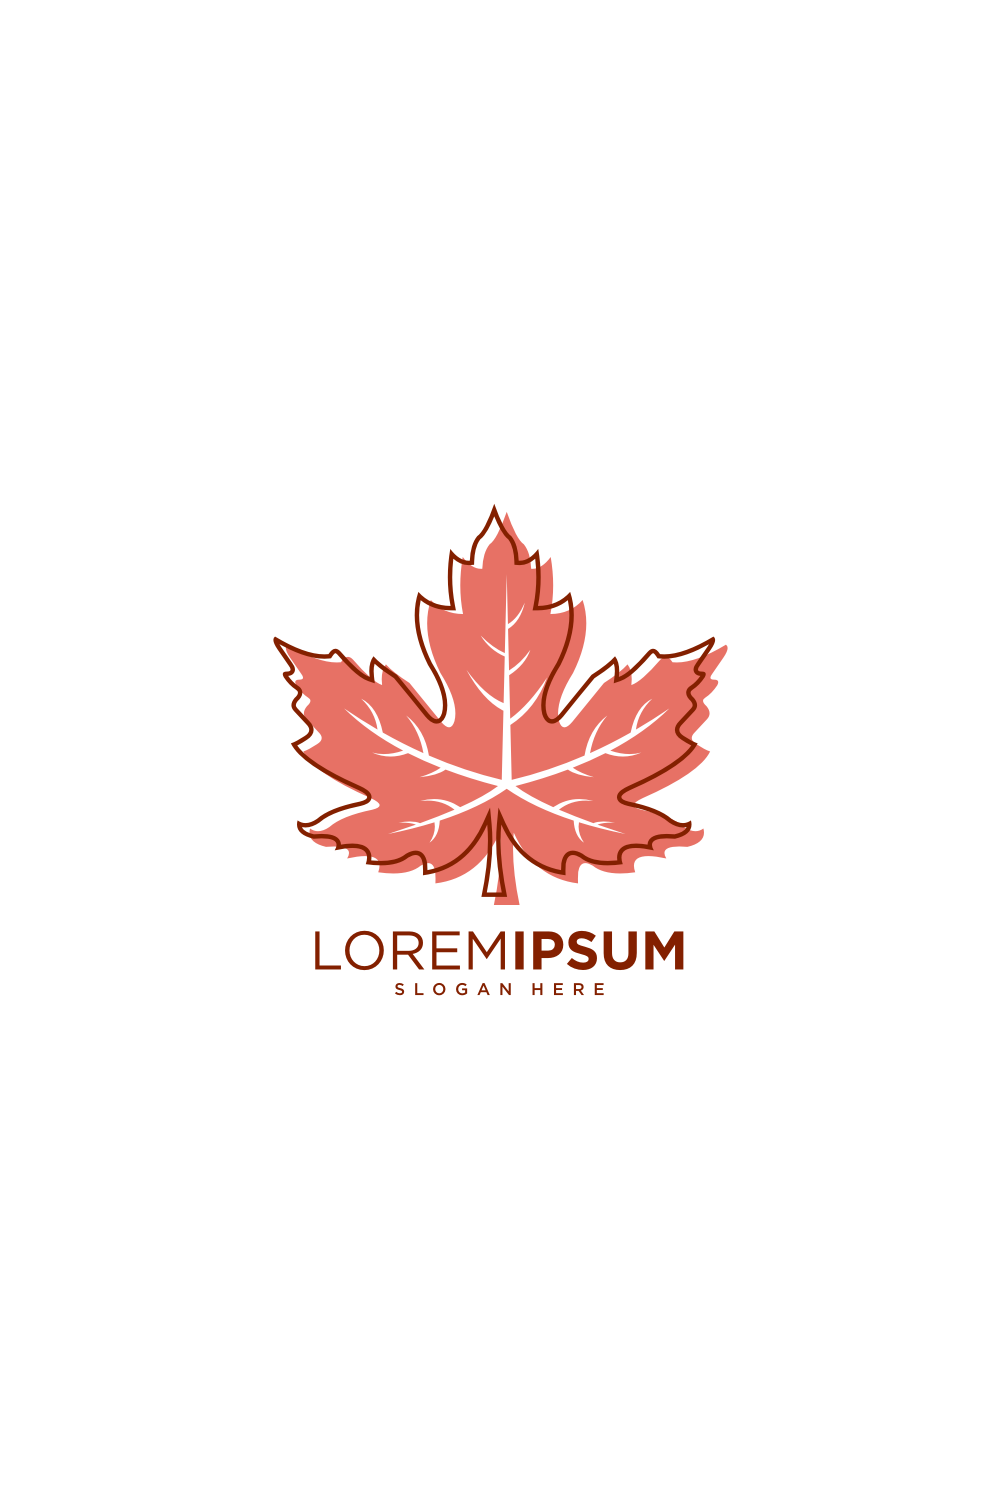 Maple Leaf Logo Vector Design Pinterest image.